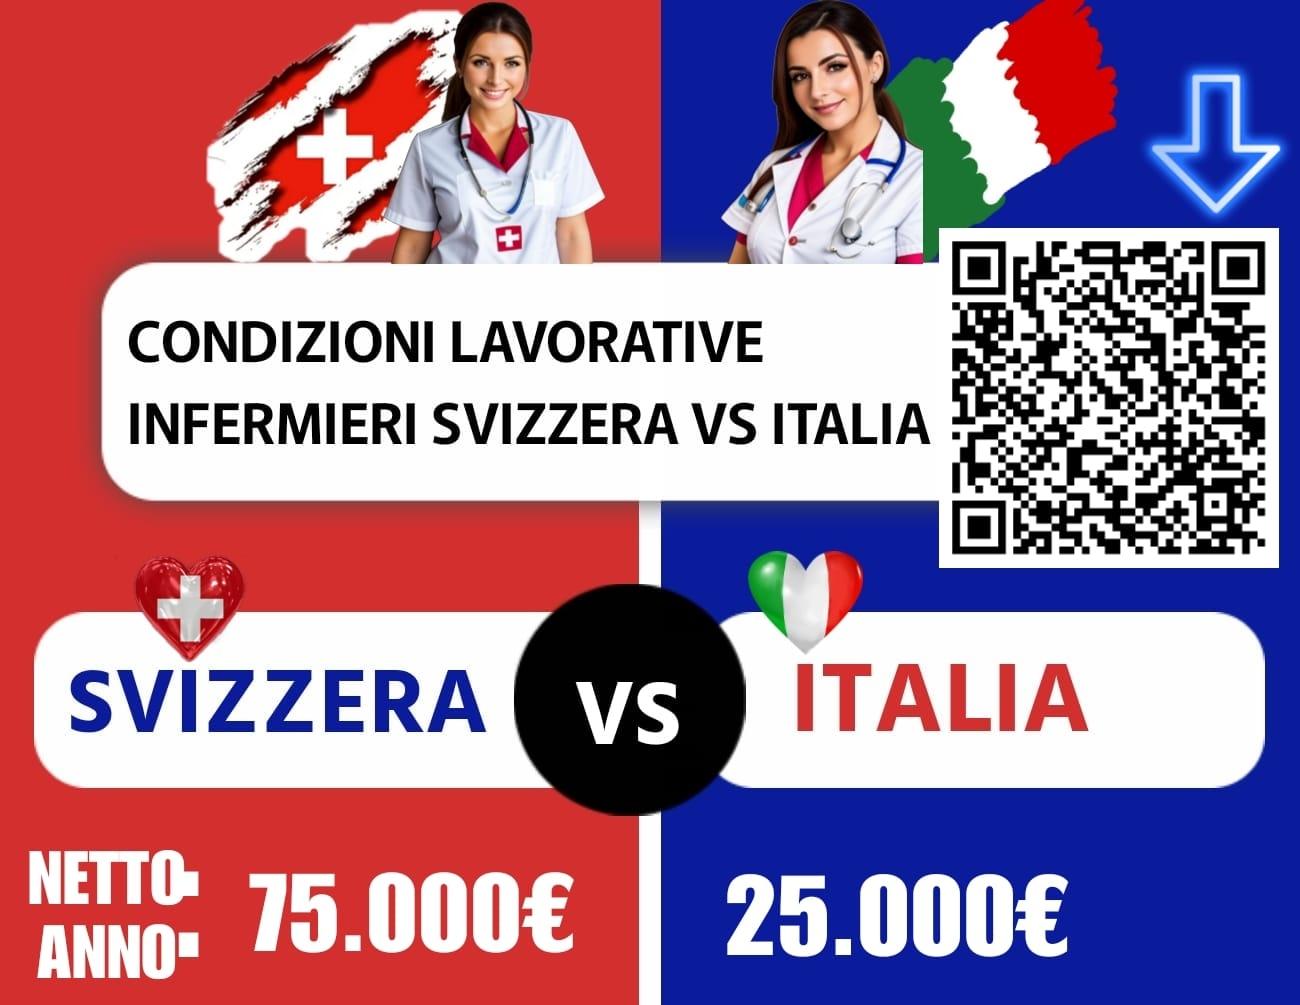 Infermiere Svizzera VS Italia. Le differenze contano